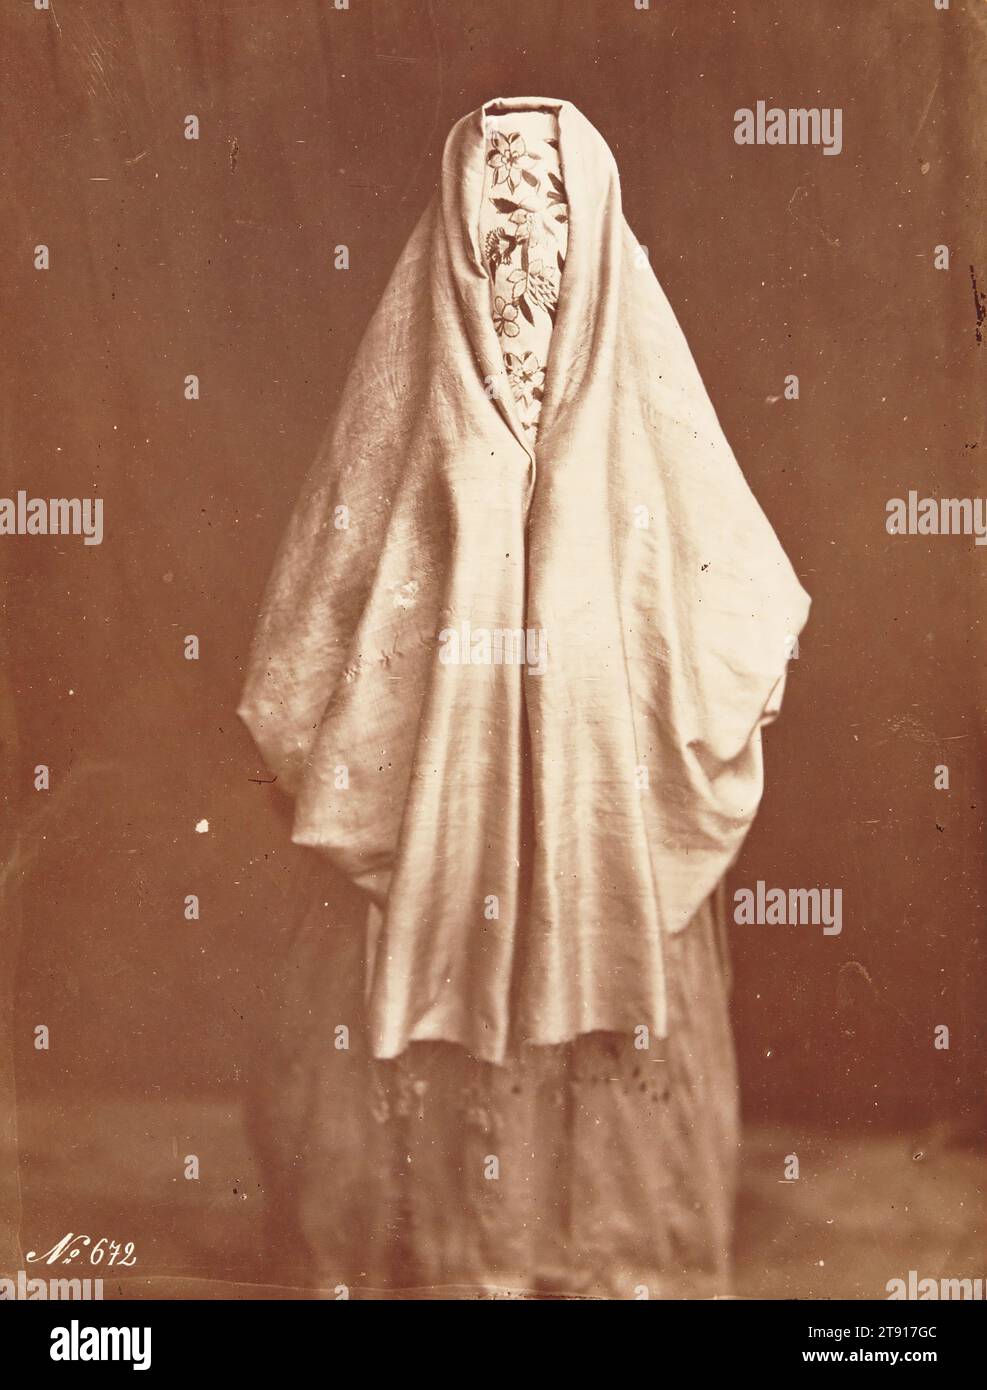 Sans titre, femme voilée, 1870-1879, Félix Bonfils, French, 1831 - 1885, 8 13/16 x 6 5/8 in. (22.38 x 16.83 cm) (image)14 x 11 in. (35.56 x 27.94 cm) (mount), Albumen print, France, 19th century Stock Photo